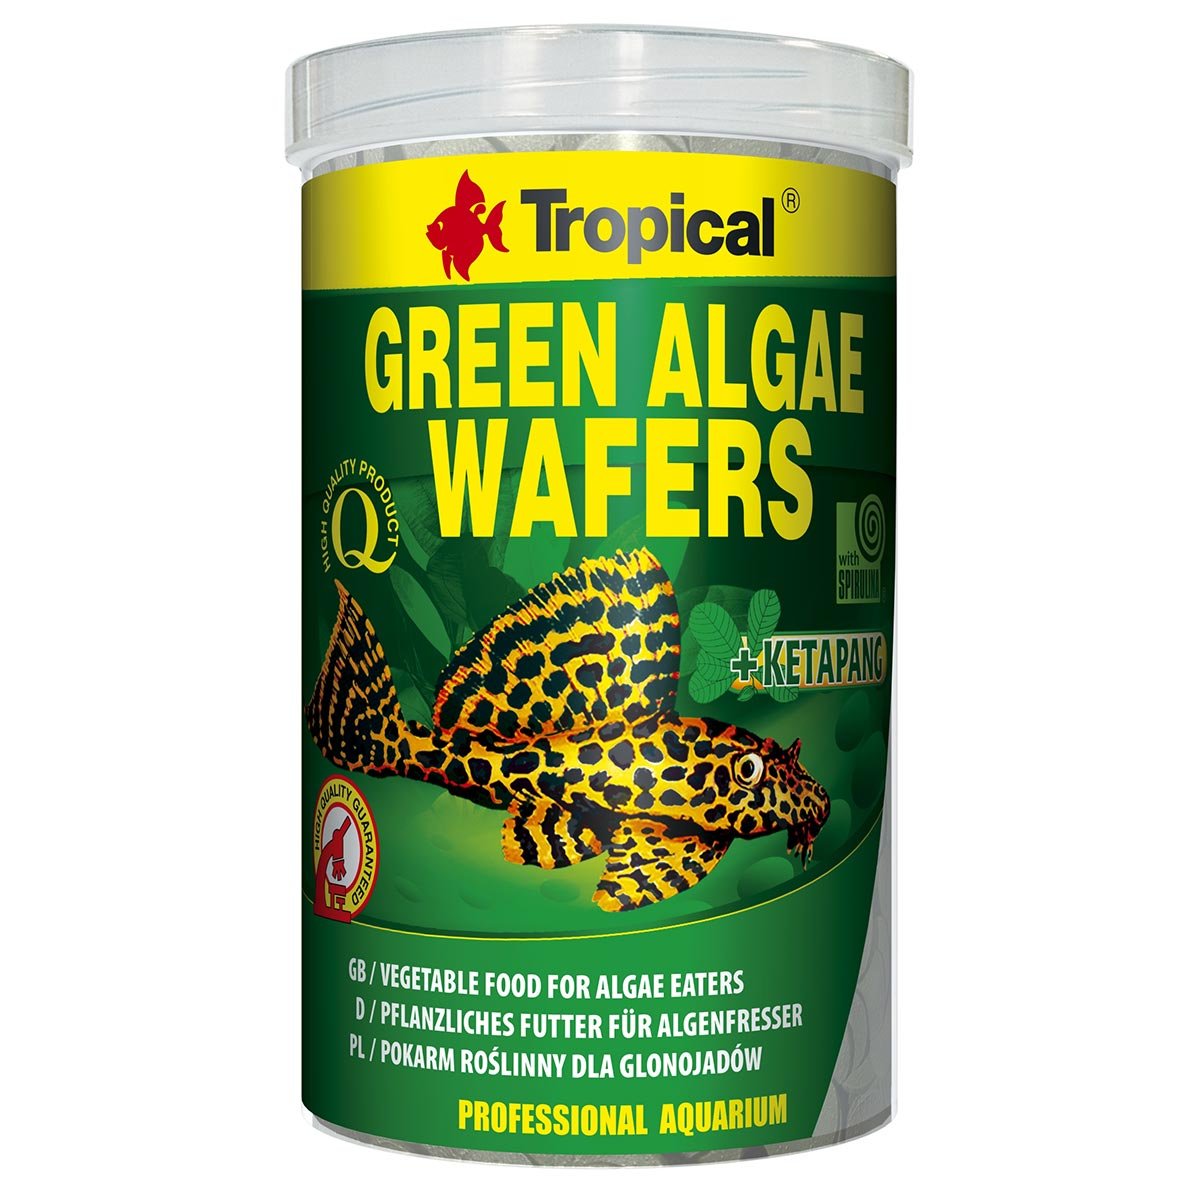 Tropical Green Algae Wafers, 1 l